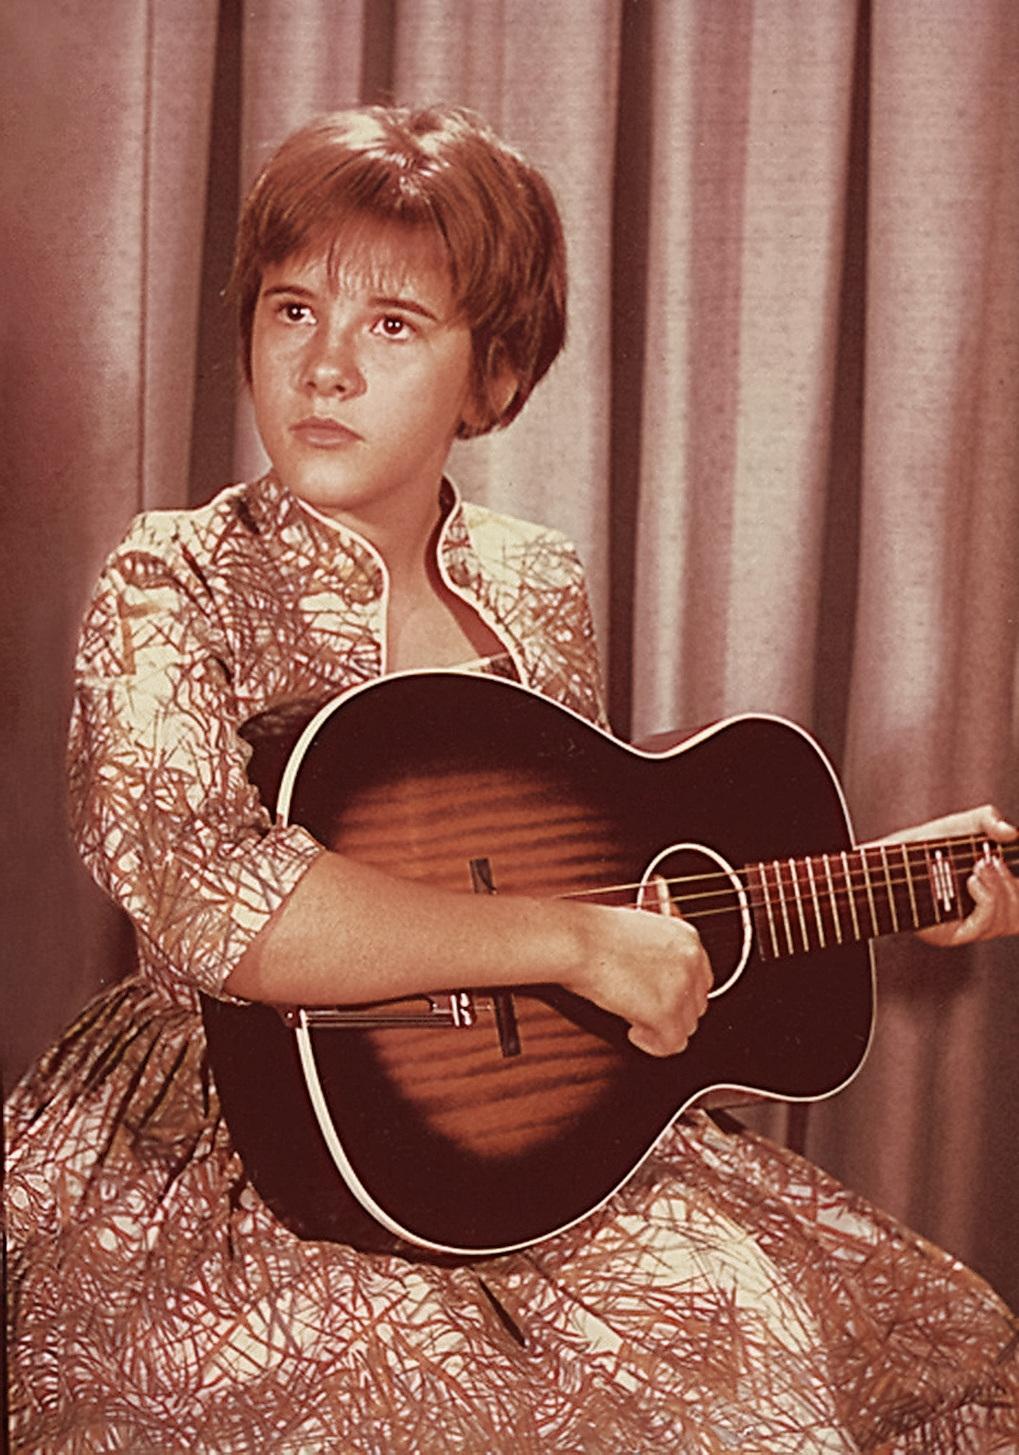 Stevie Nicks with a Stella Harmony guitar, 1960s.jpg